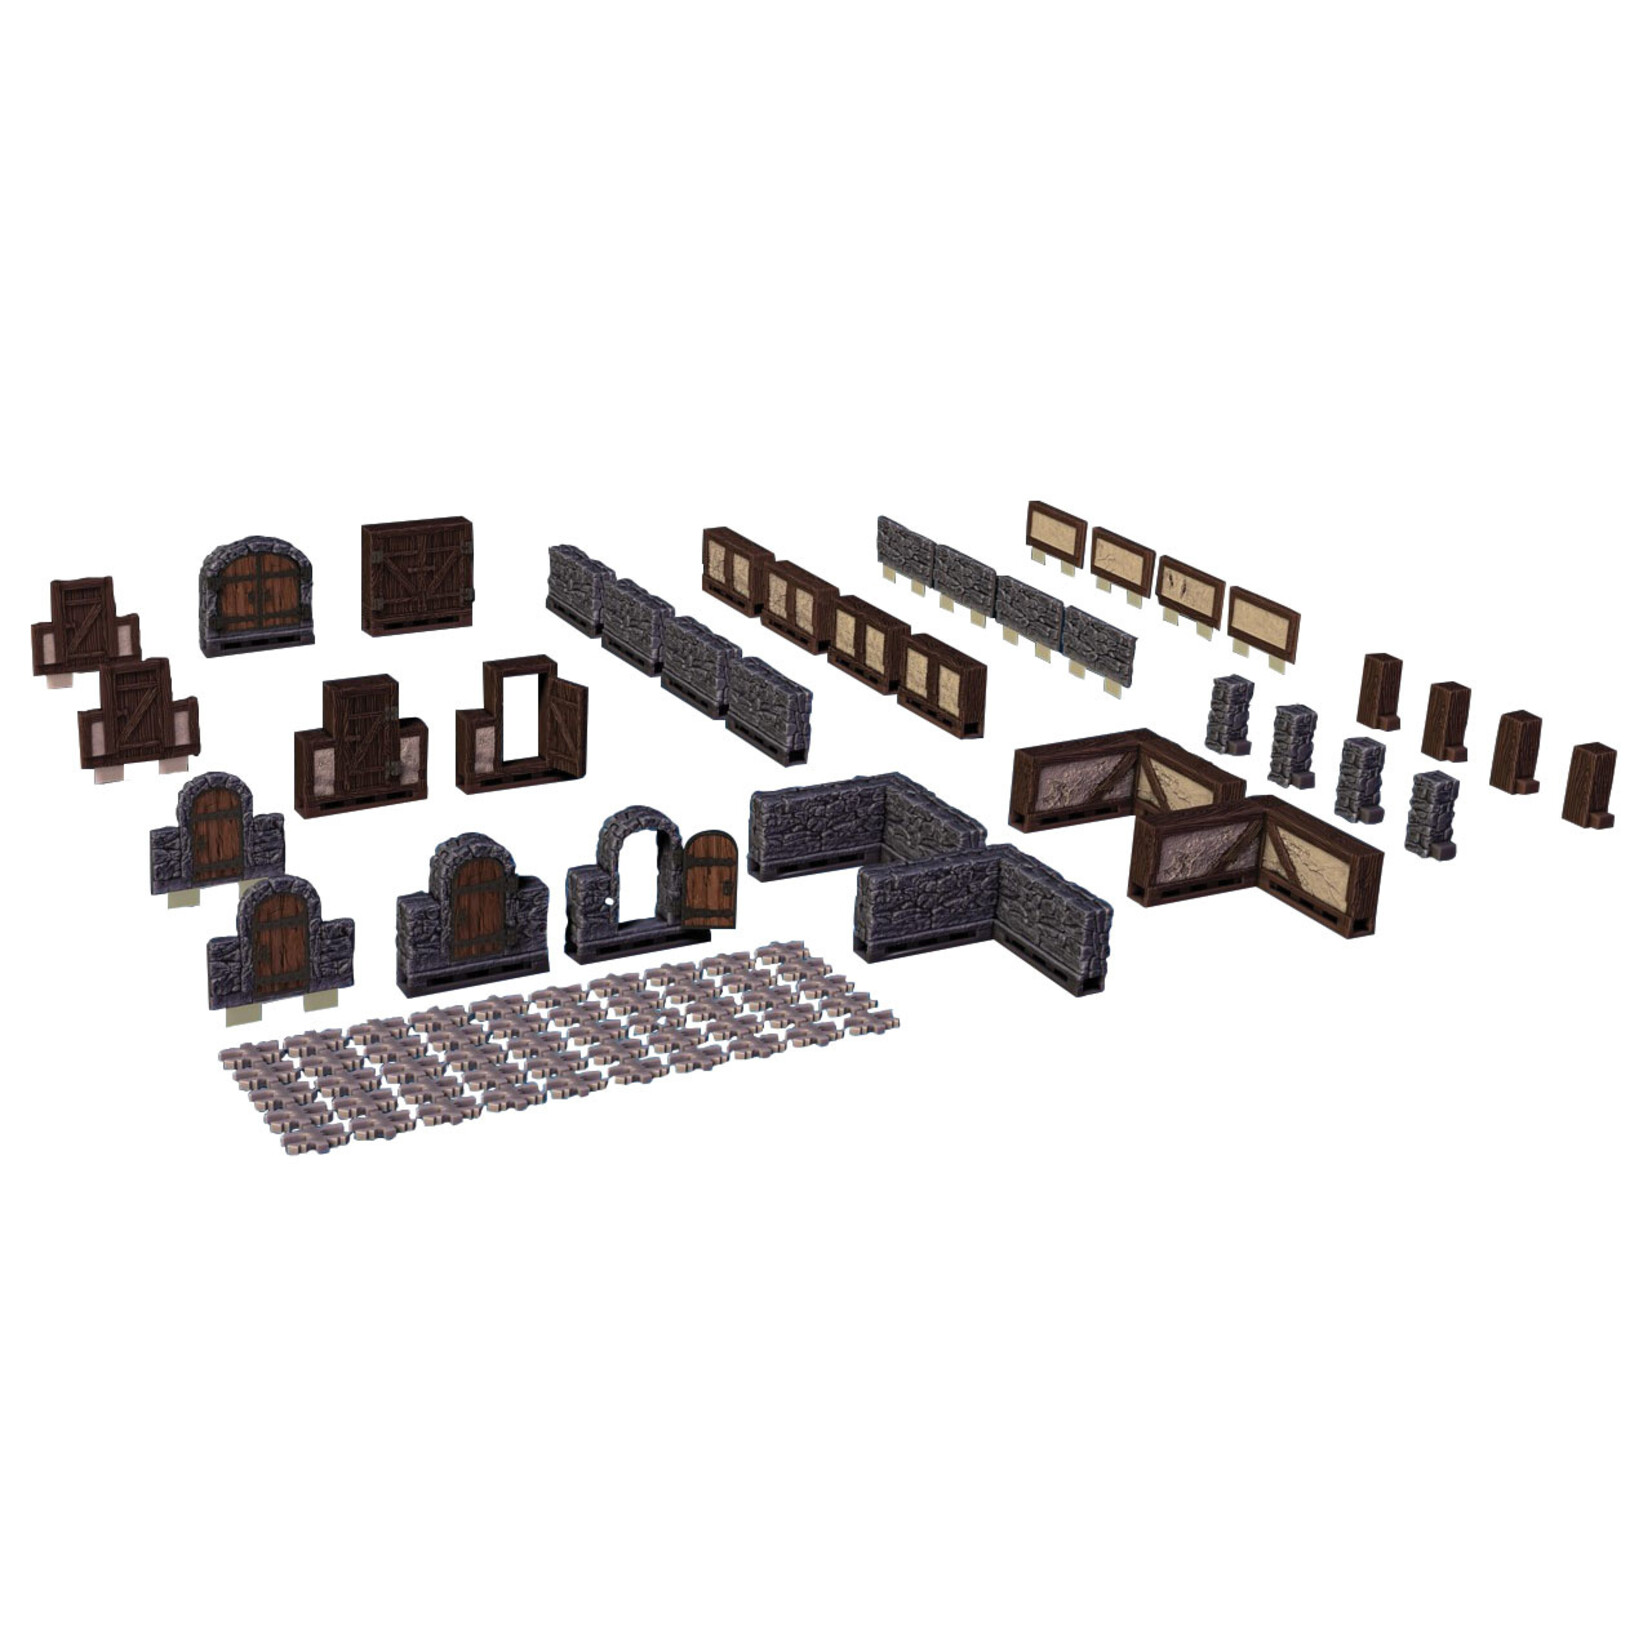 Wizkids WarLock Tiles: Expansion Box I